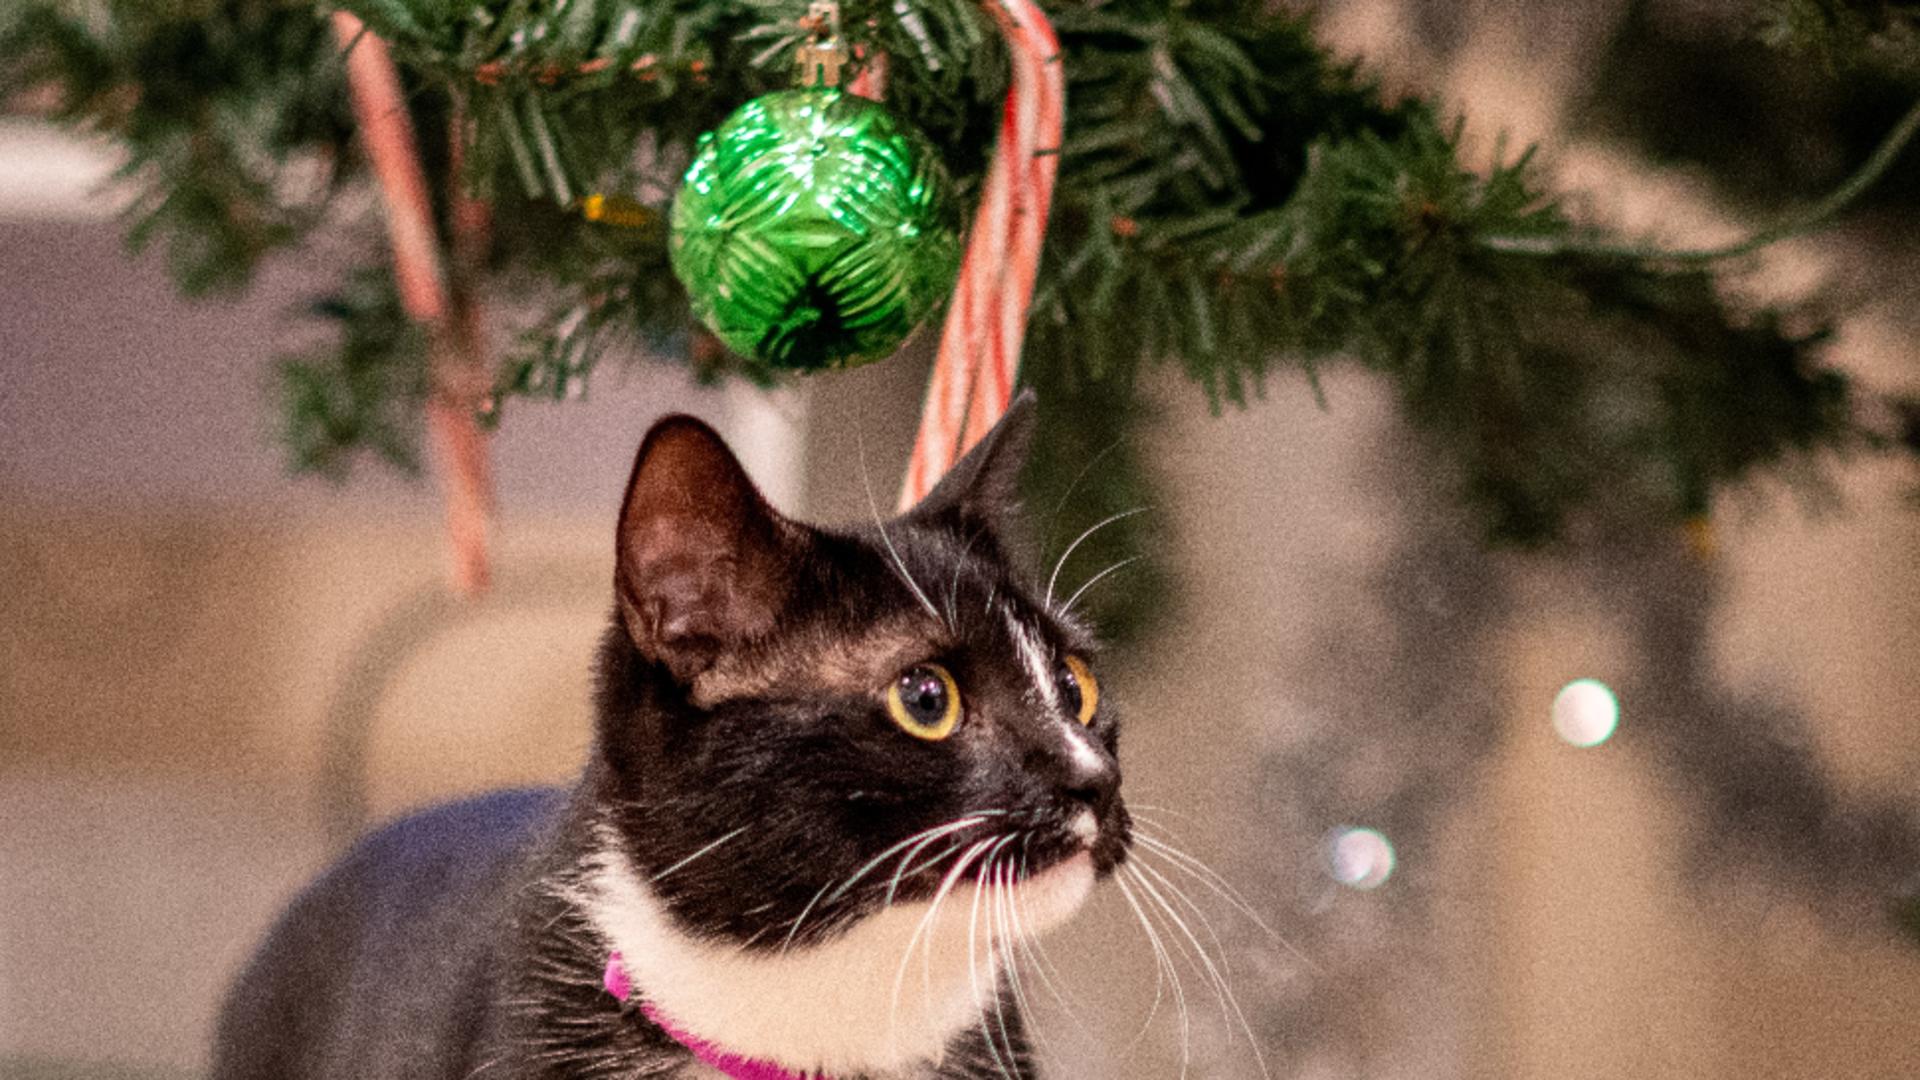 Cele mai bune metode pentru a ține pisica departe de bradul de Crăciun - Top 5 mirosuri care o pun pe fugă/ unsplash.com